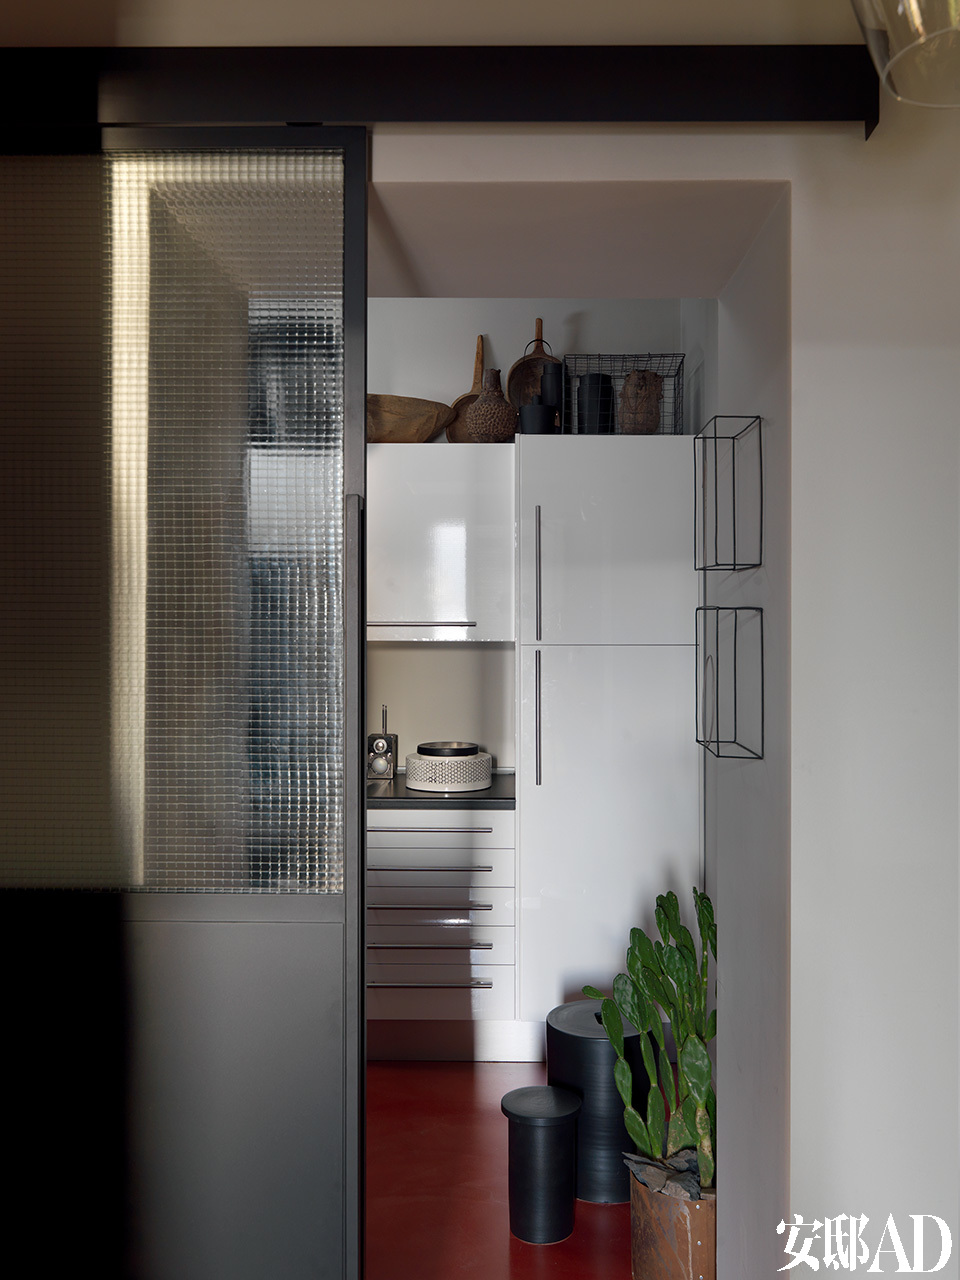 工业风格的滑动门可以通往家中的厨房，厨房的架子上陈列着一系列民族和现代风格的物件，为原本稍显平淡的厨房增添了质感和氛围。厨房墙壁上的金属丝雕塑是由Antonino Sciortino创作的。